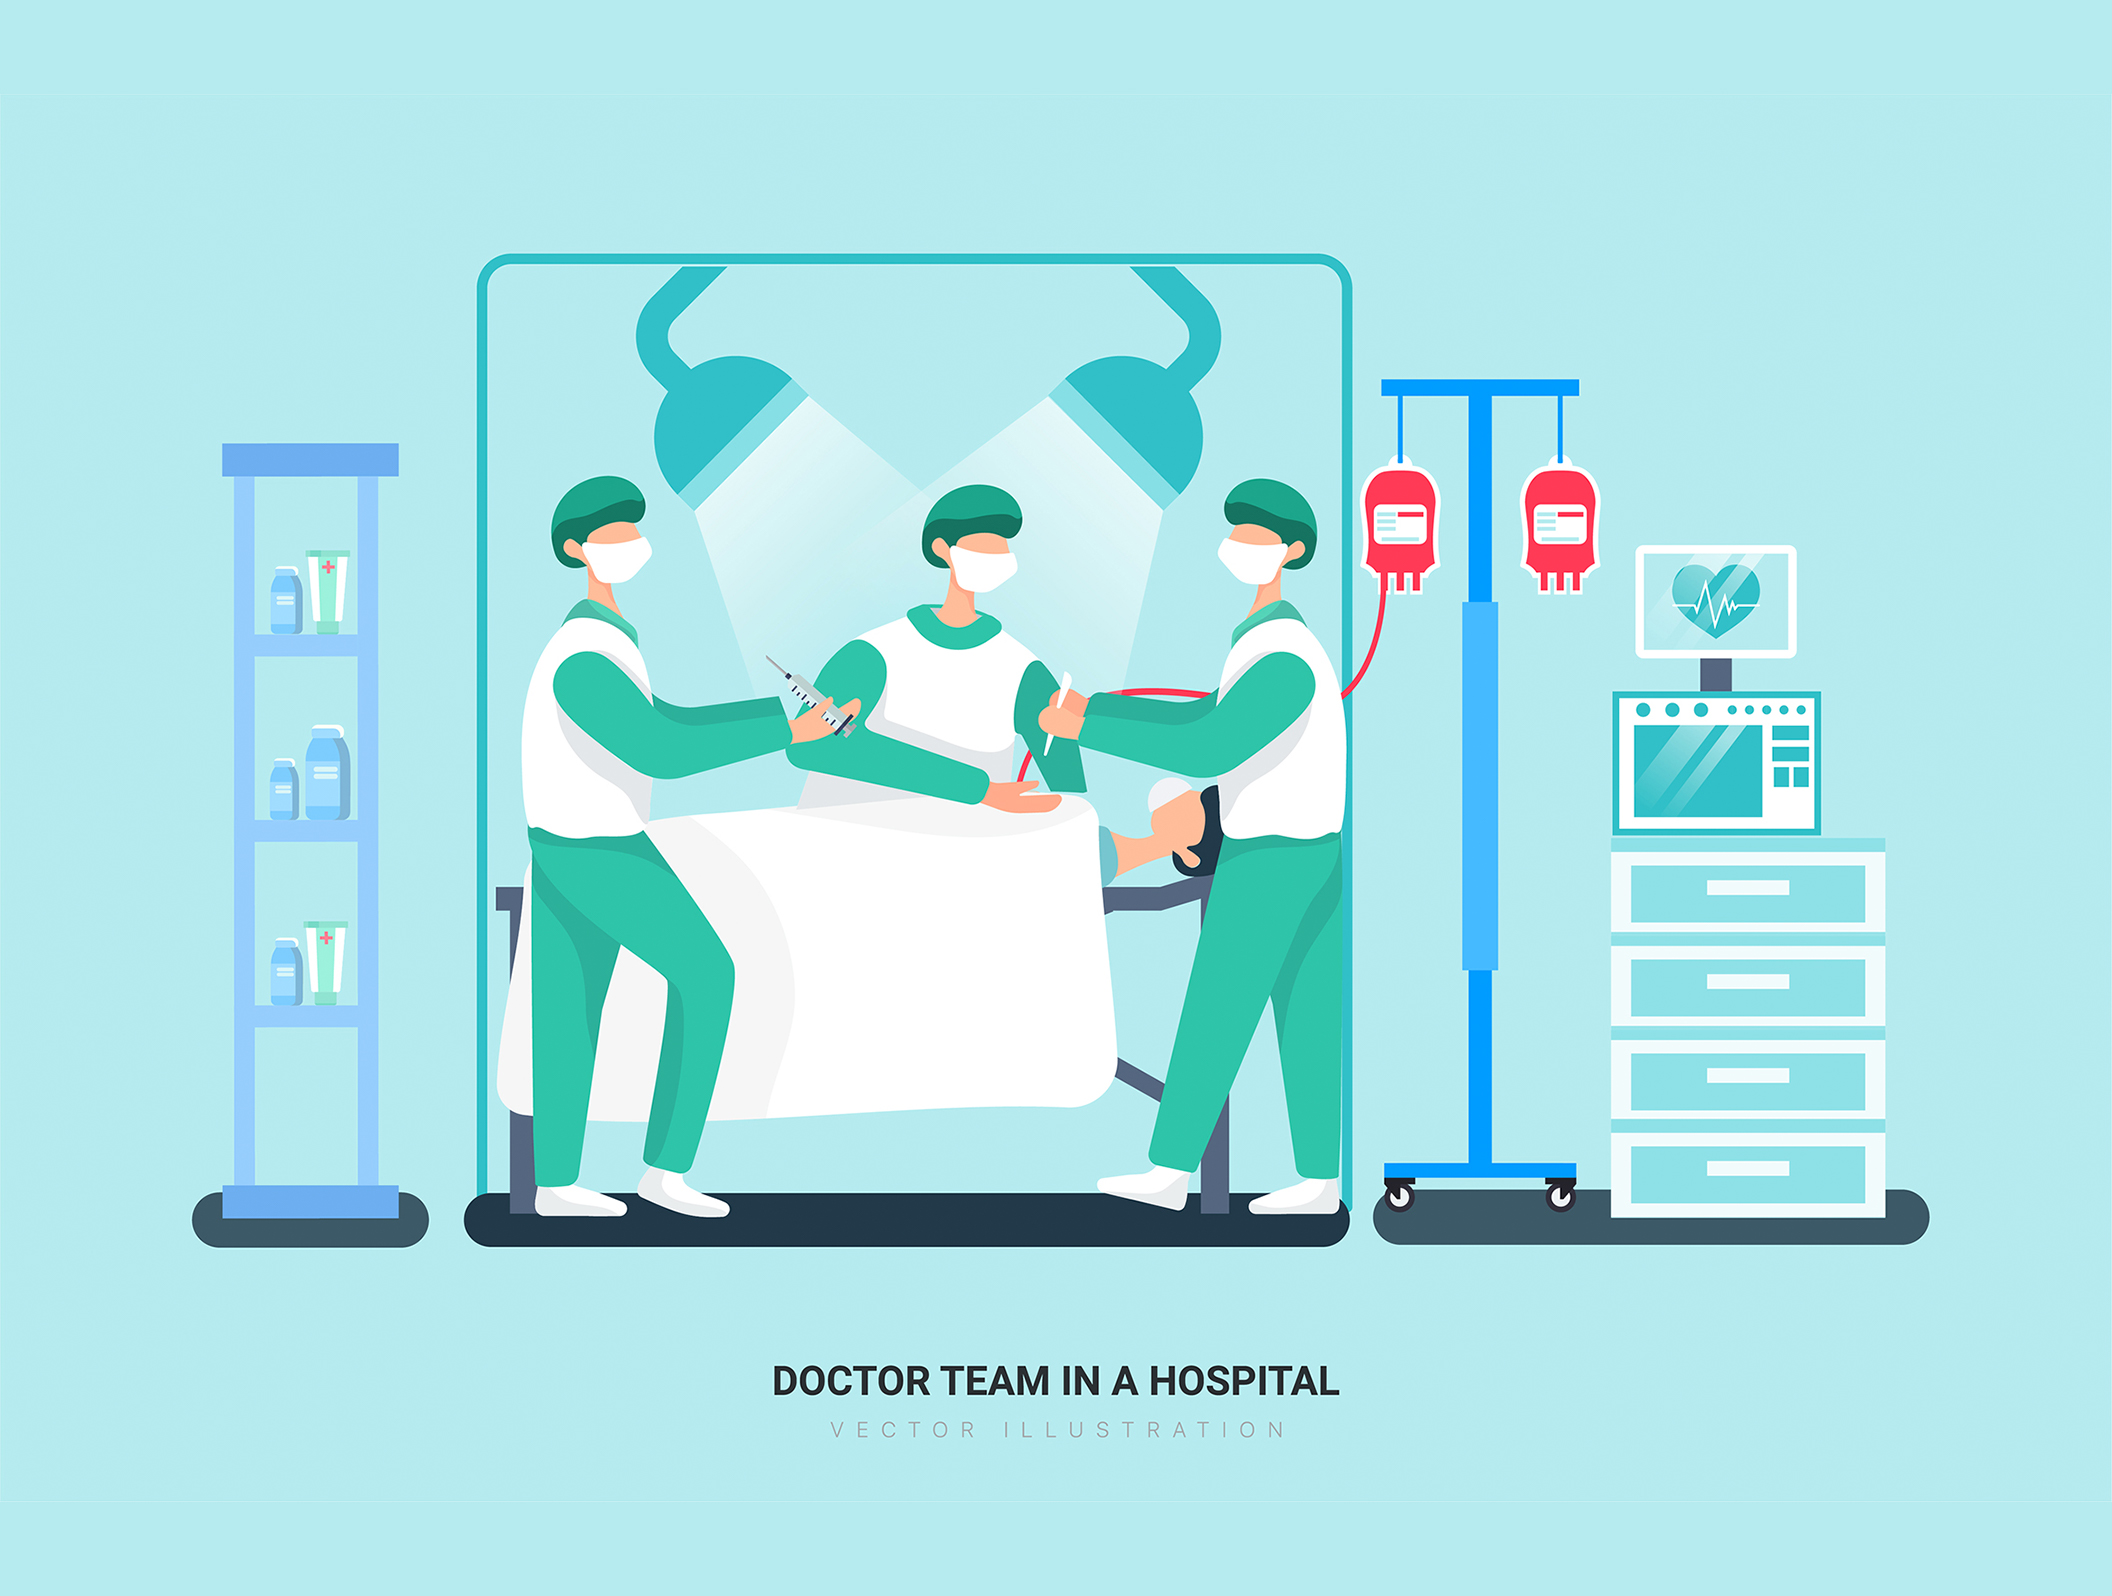 第一素材下午茶：医院和医疗保健场景矢量插画素材插图(8)